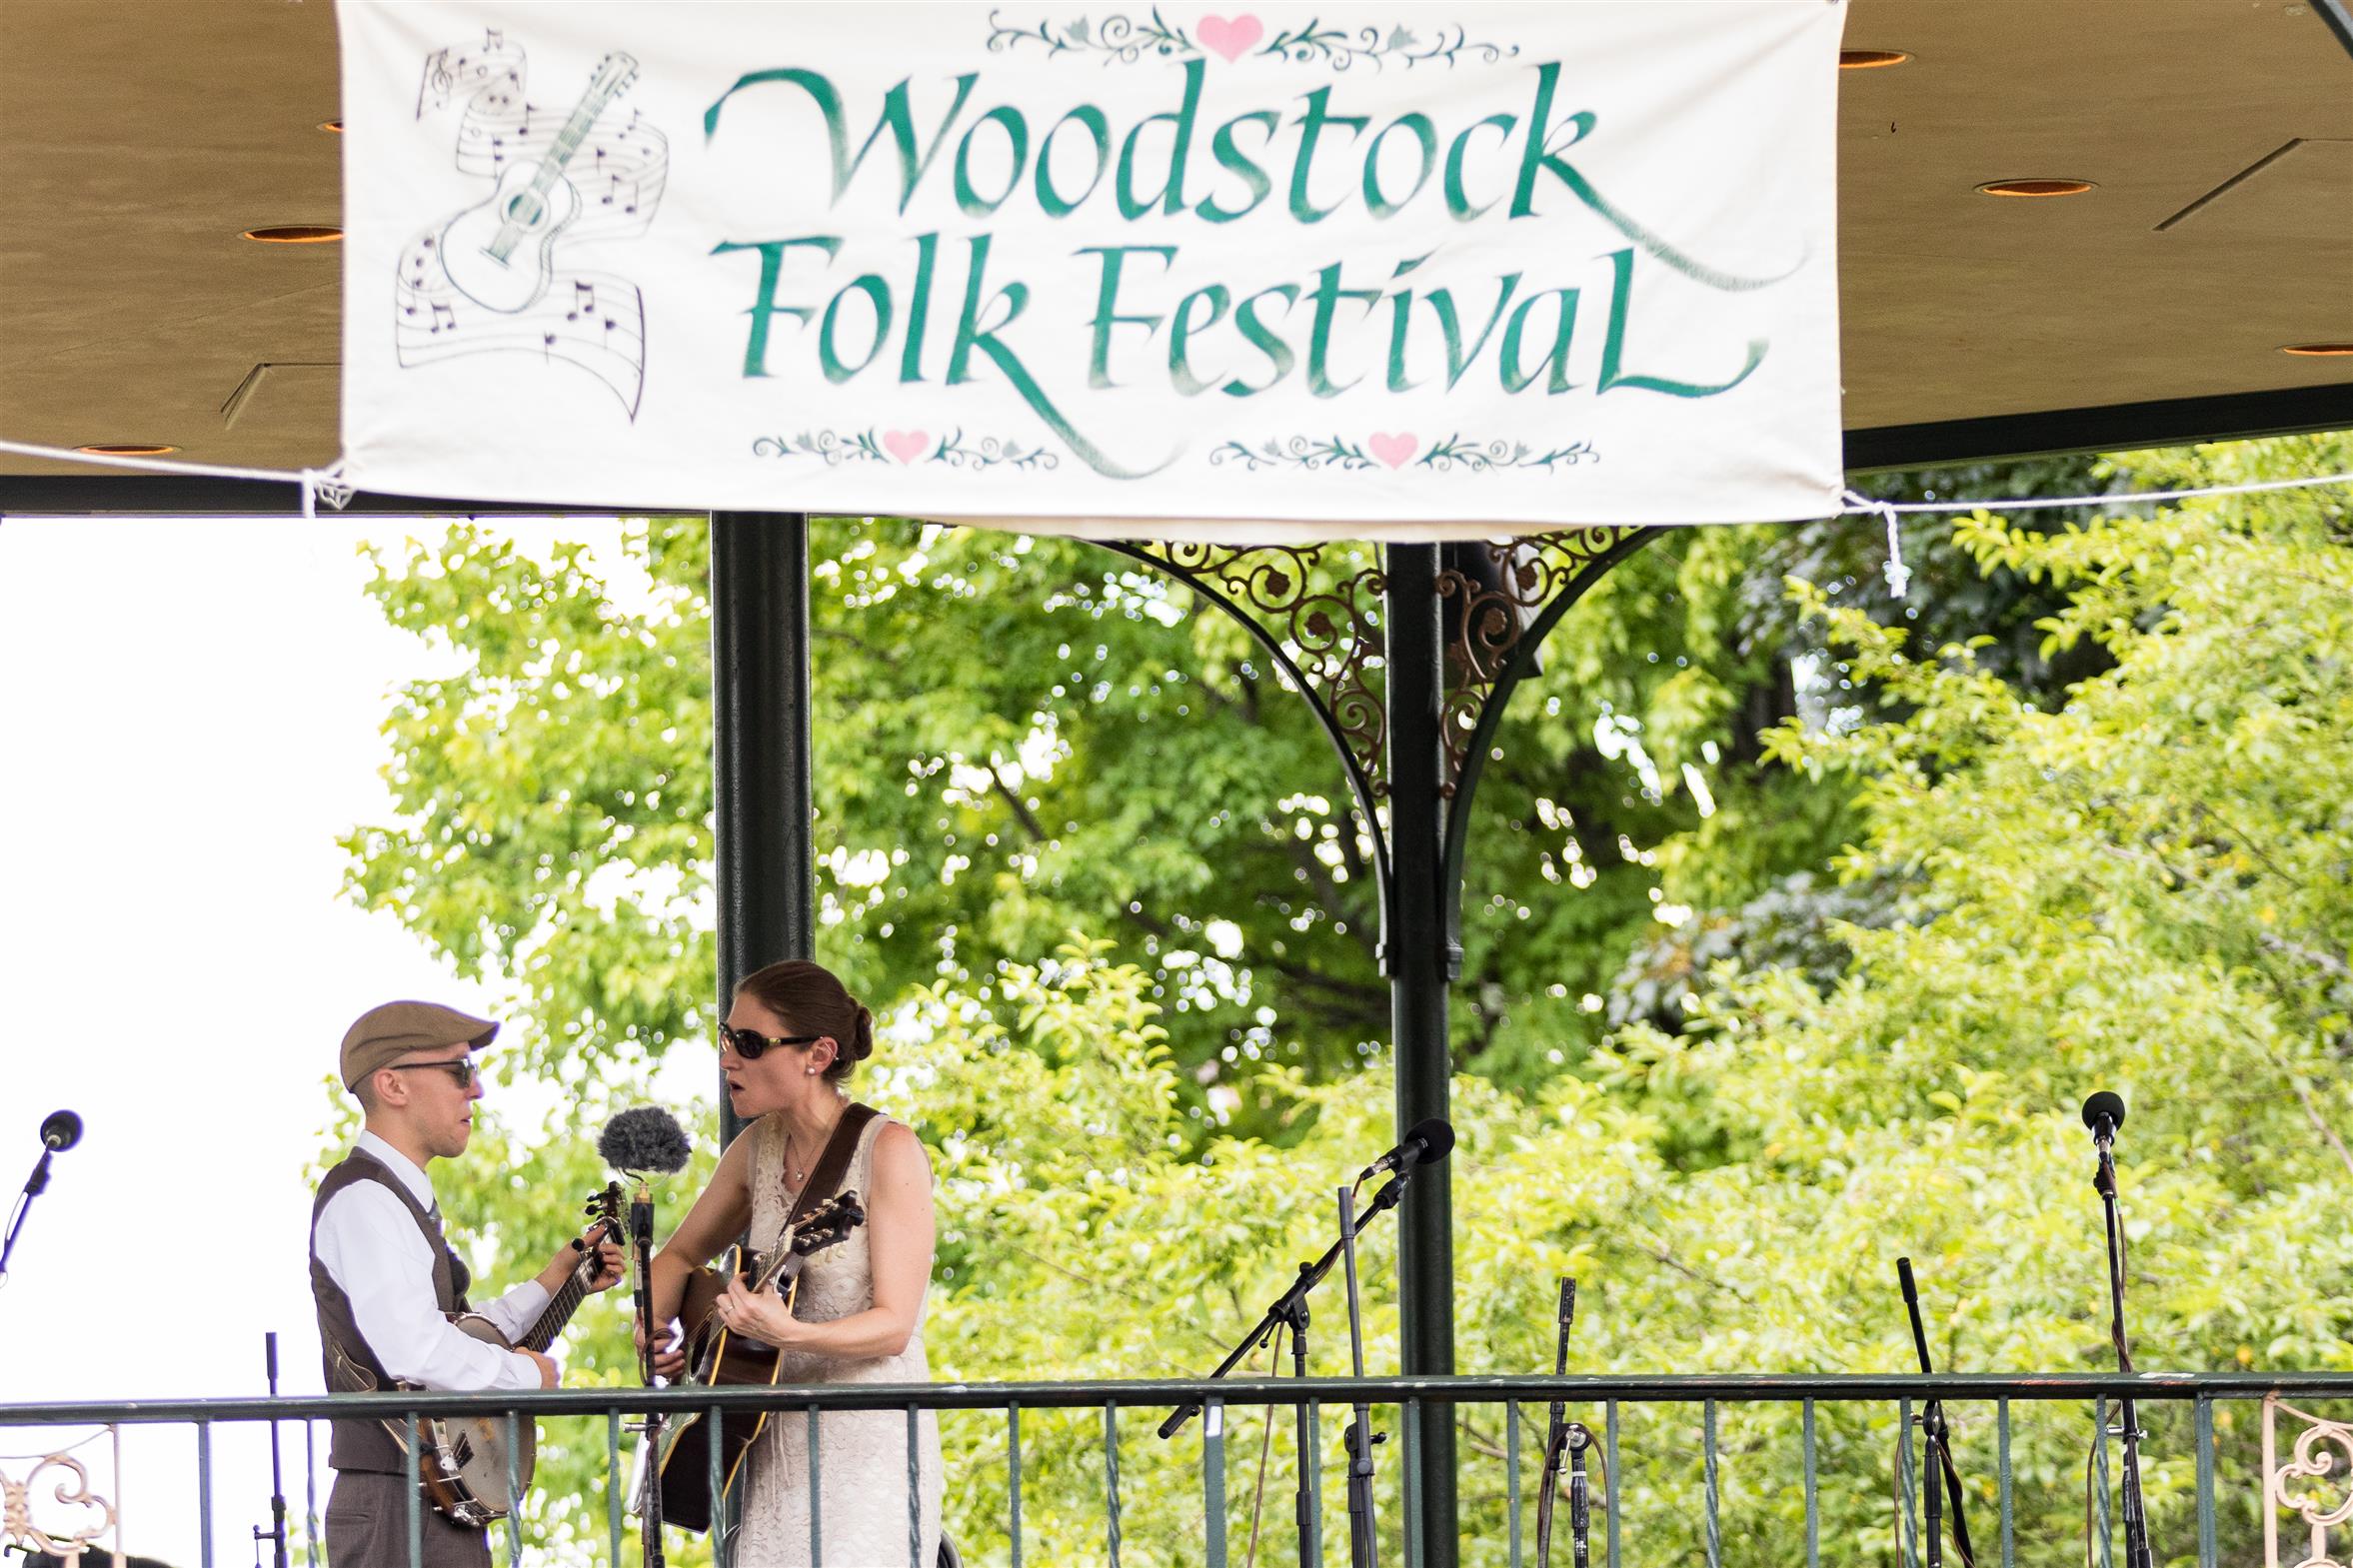 37th Annual Woodstock Folk Festival